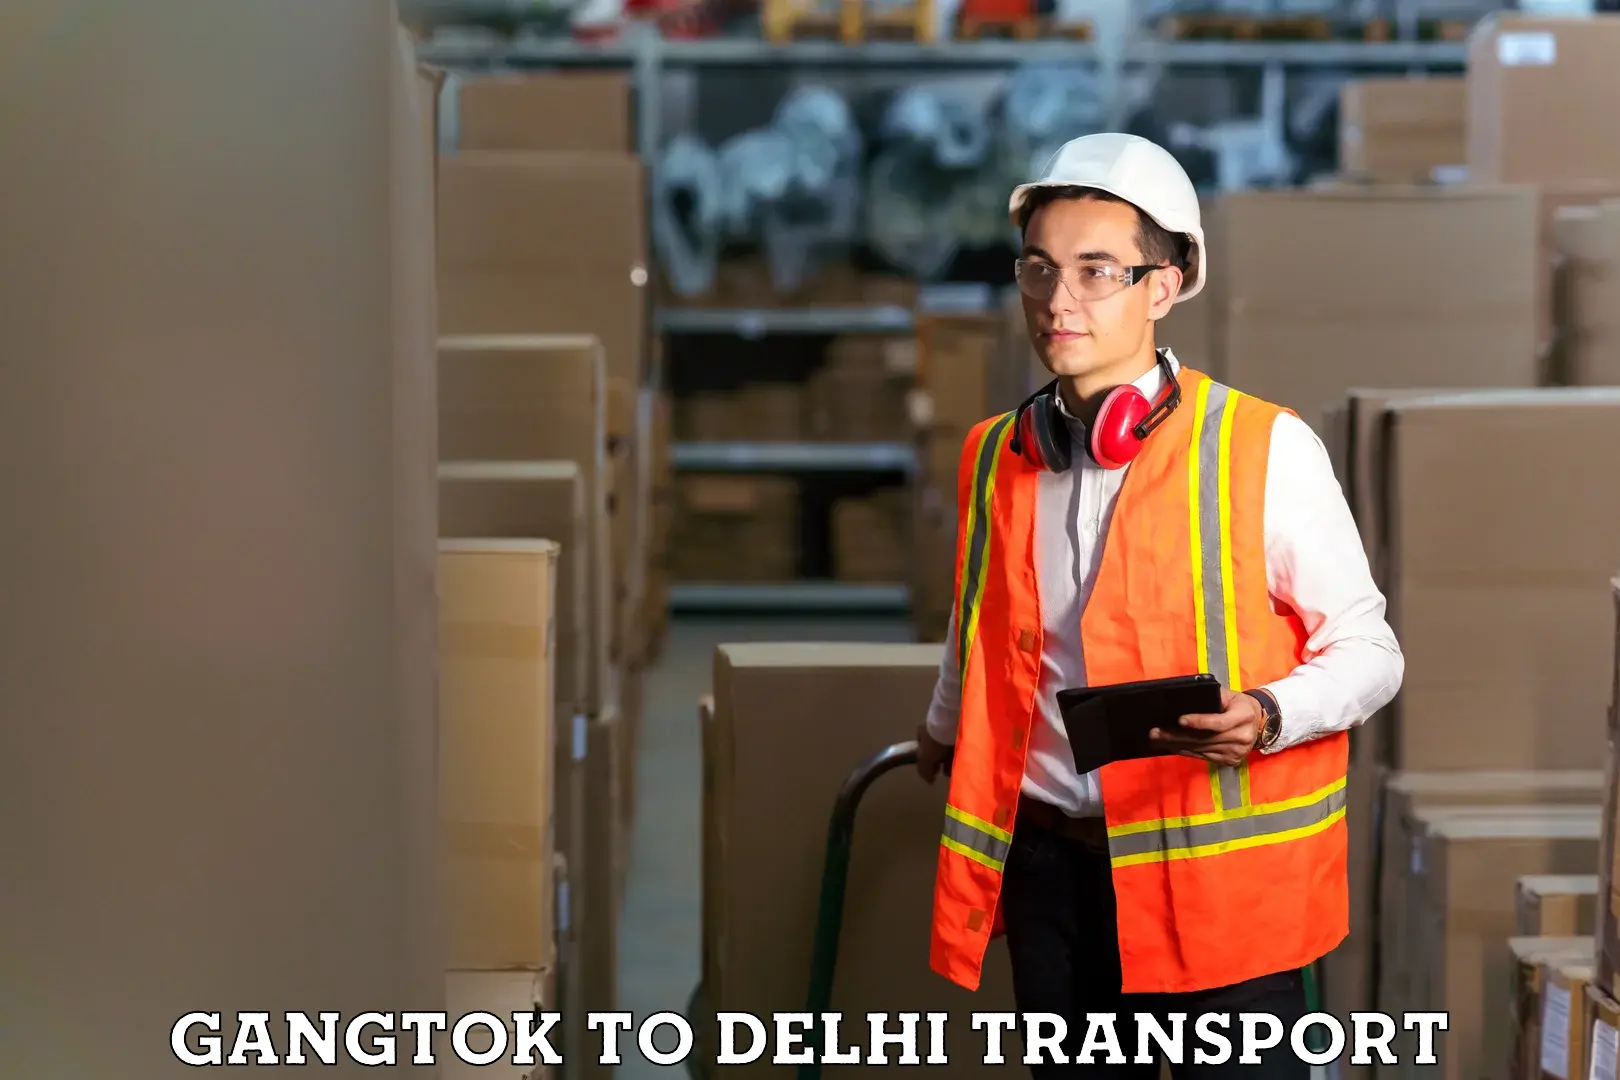 Shipping partner Gangtok to Guru Gobind Singh Indraprastha University New Delhi